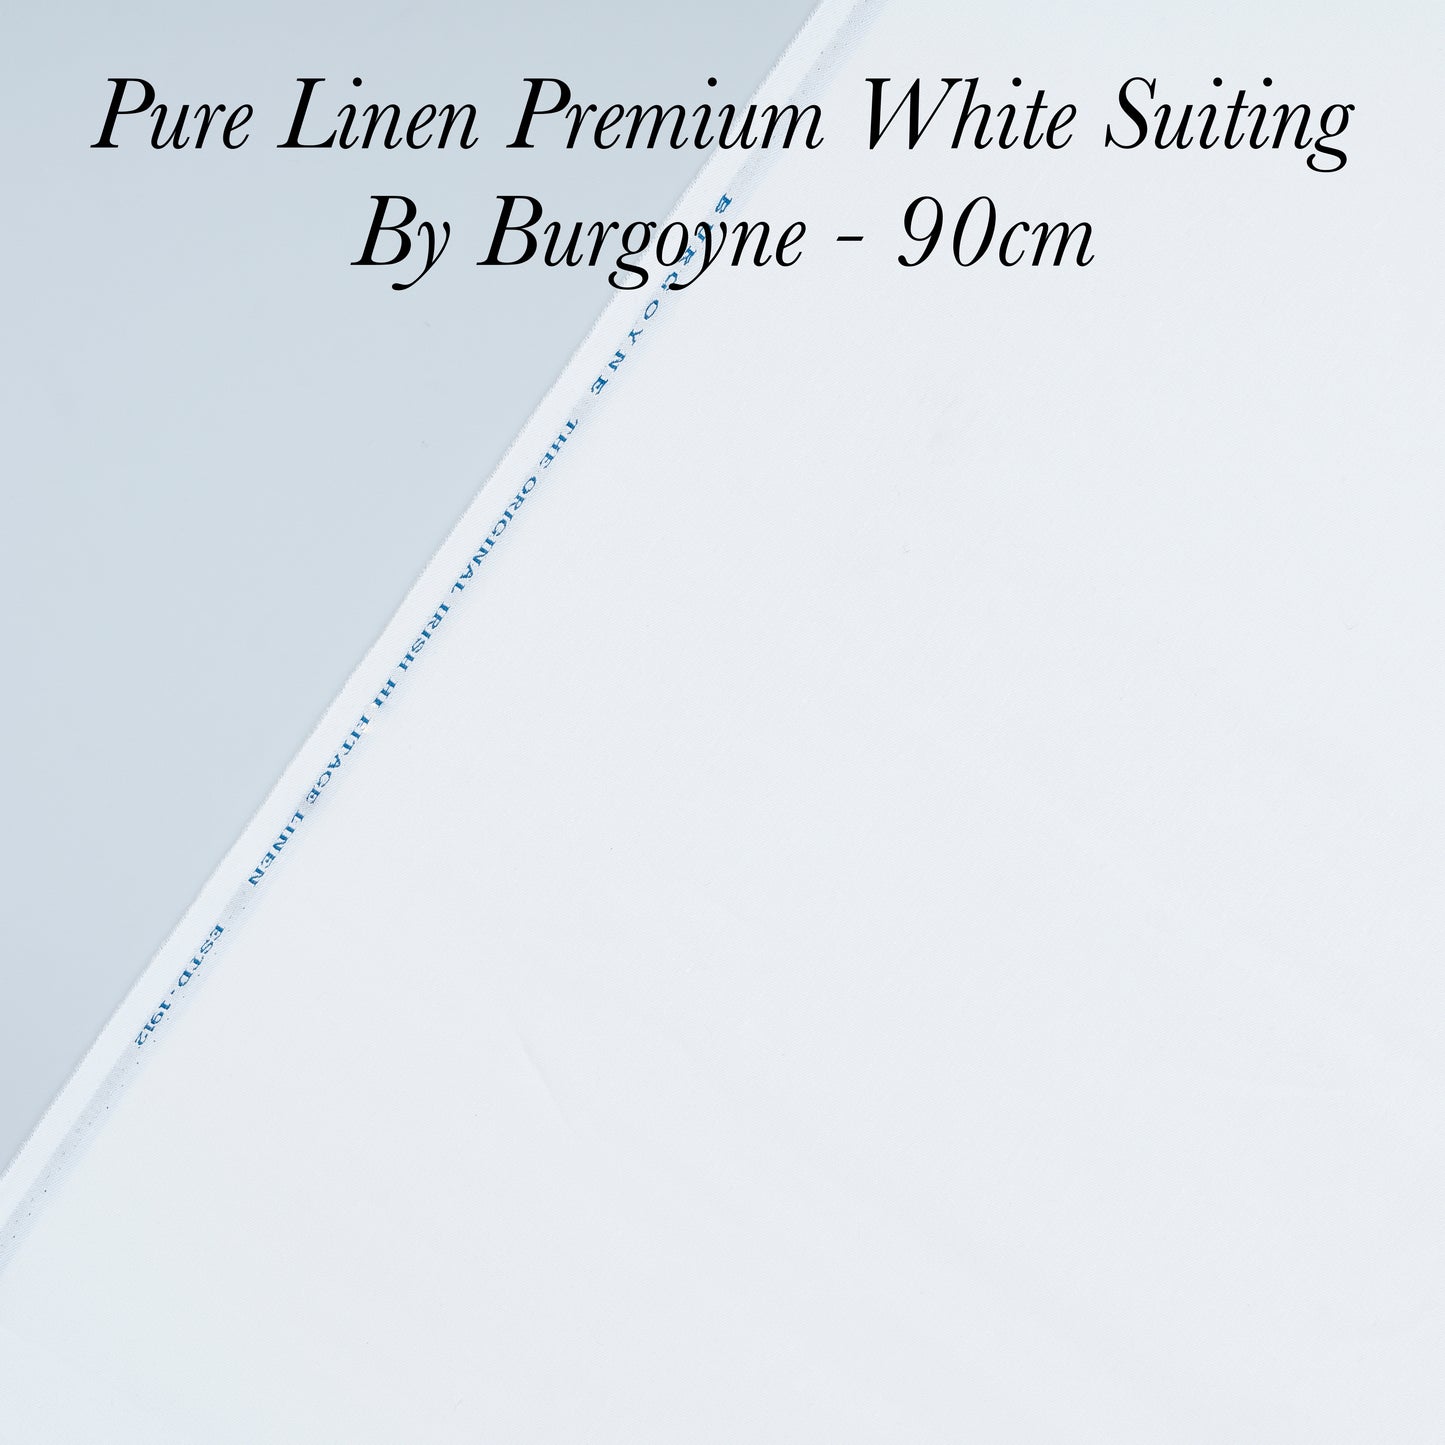 90 Cm Pure Linen Suiting - END BIT (50%)